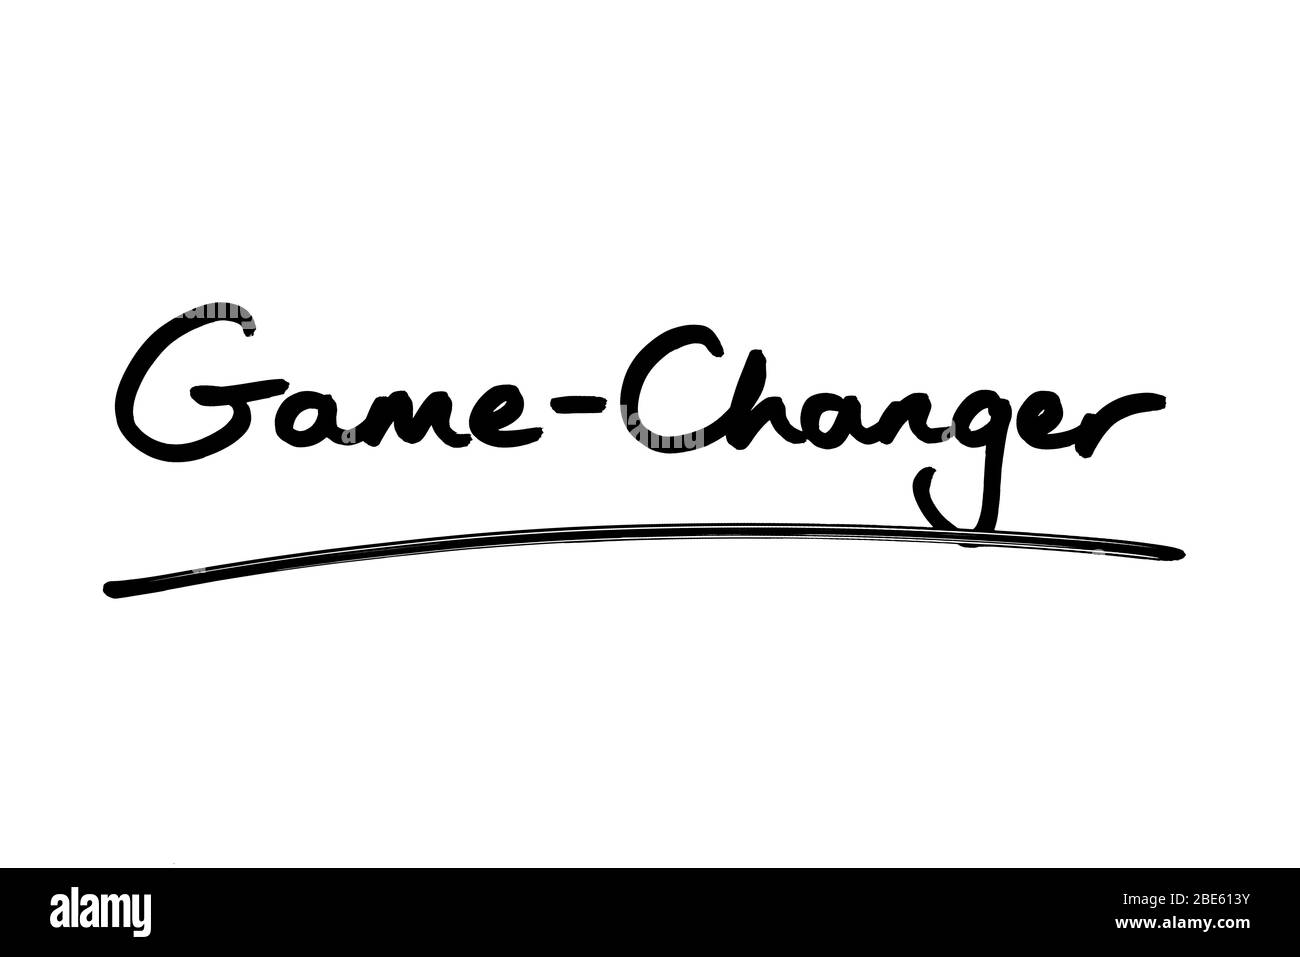 Thay đổi trò chơi là một cách để đón đầu sự thay đổi và tạo ra sự khác biệt. Hãy xem hình ảnh liên quan để khám phá những thay đổi đáng kinh ngạc trong trò chơi mà bạn chưa từng thấy.